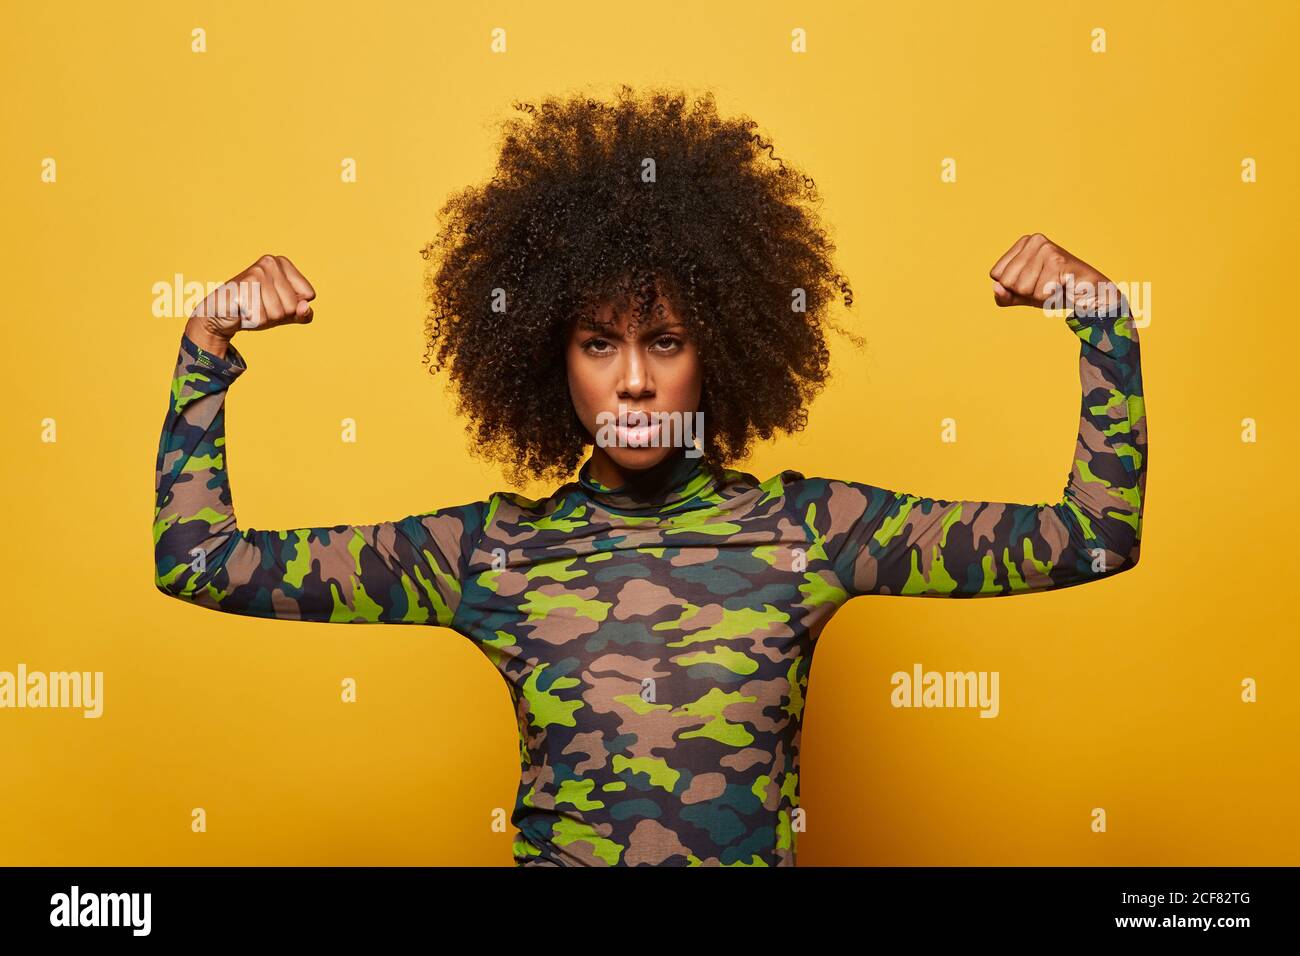 Seriöse starke ethnisch ermächtigte Frau in Camouflage-Hemd und mit Afro-Frisur zeigt Bizeps auf gelbem Hintergrund Blick auf die Kamera Stockfoto